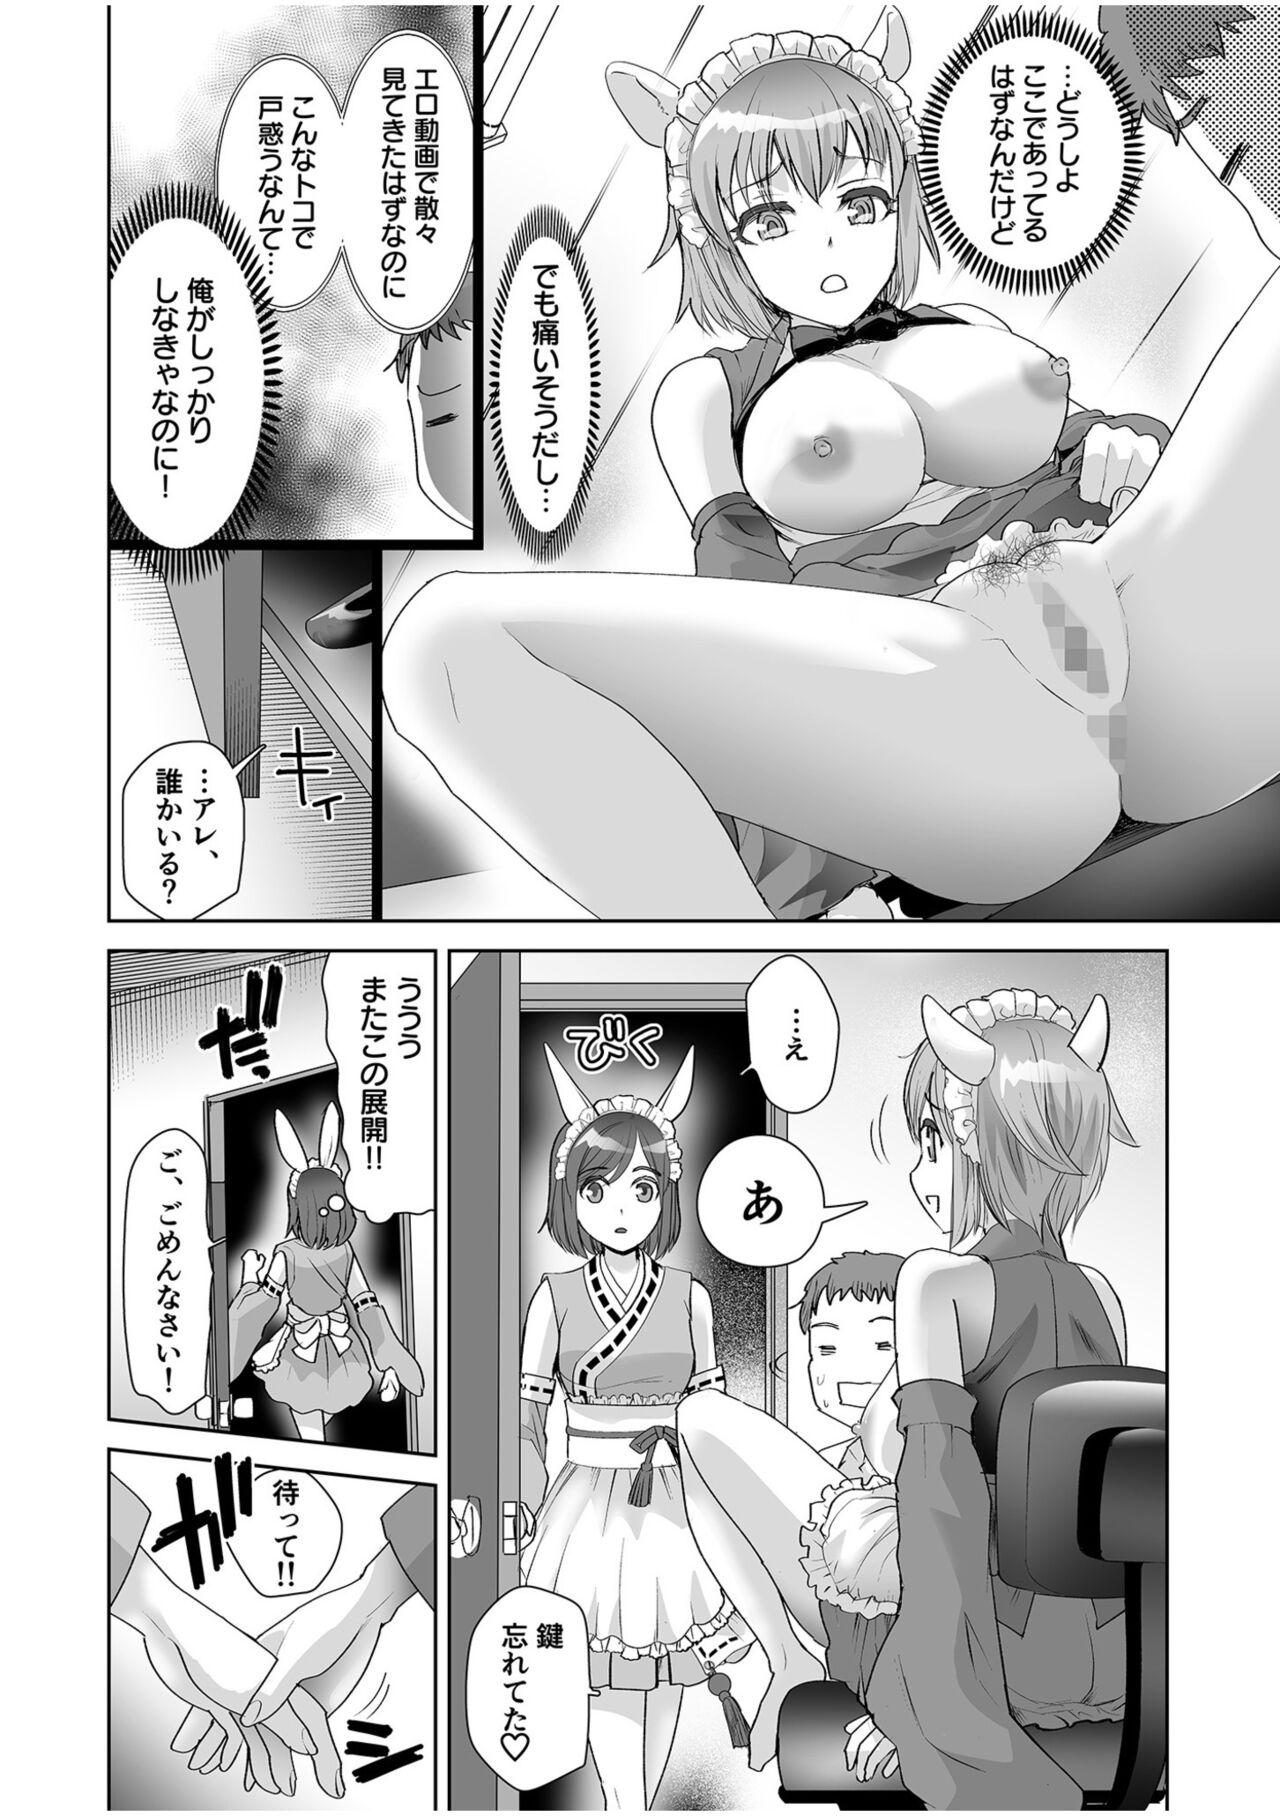 Erotic Maid Mimi Japan 63